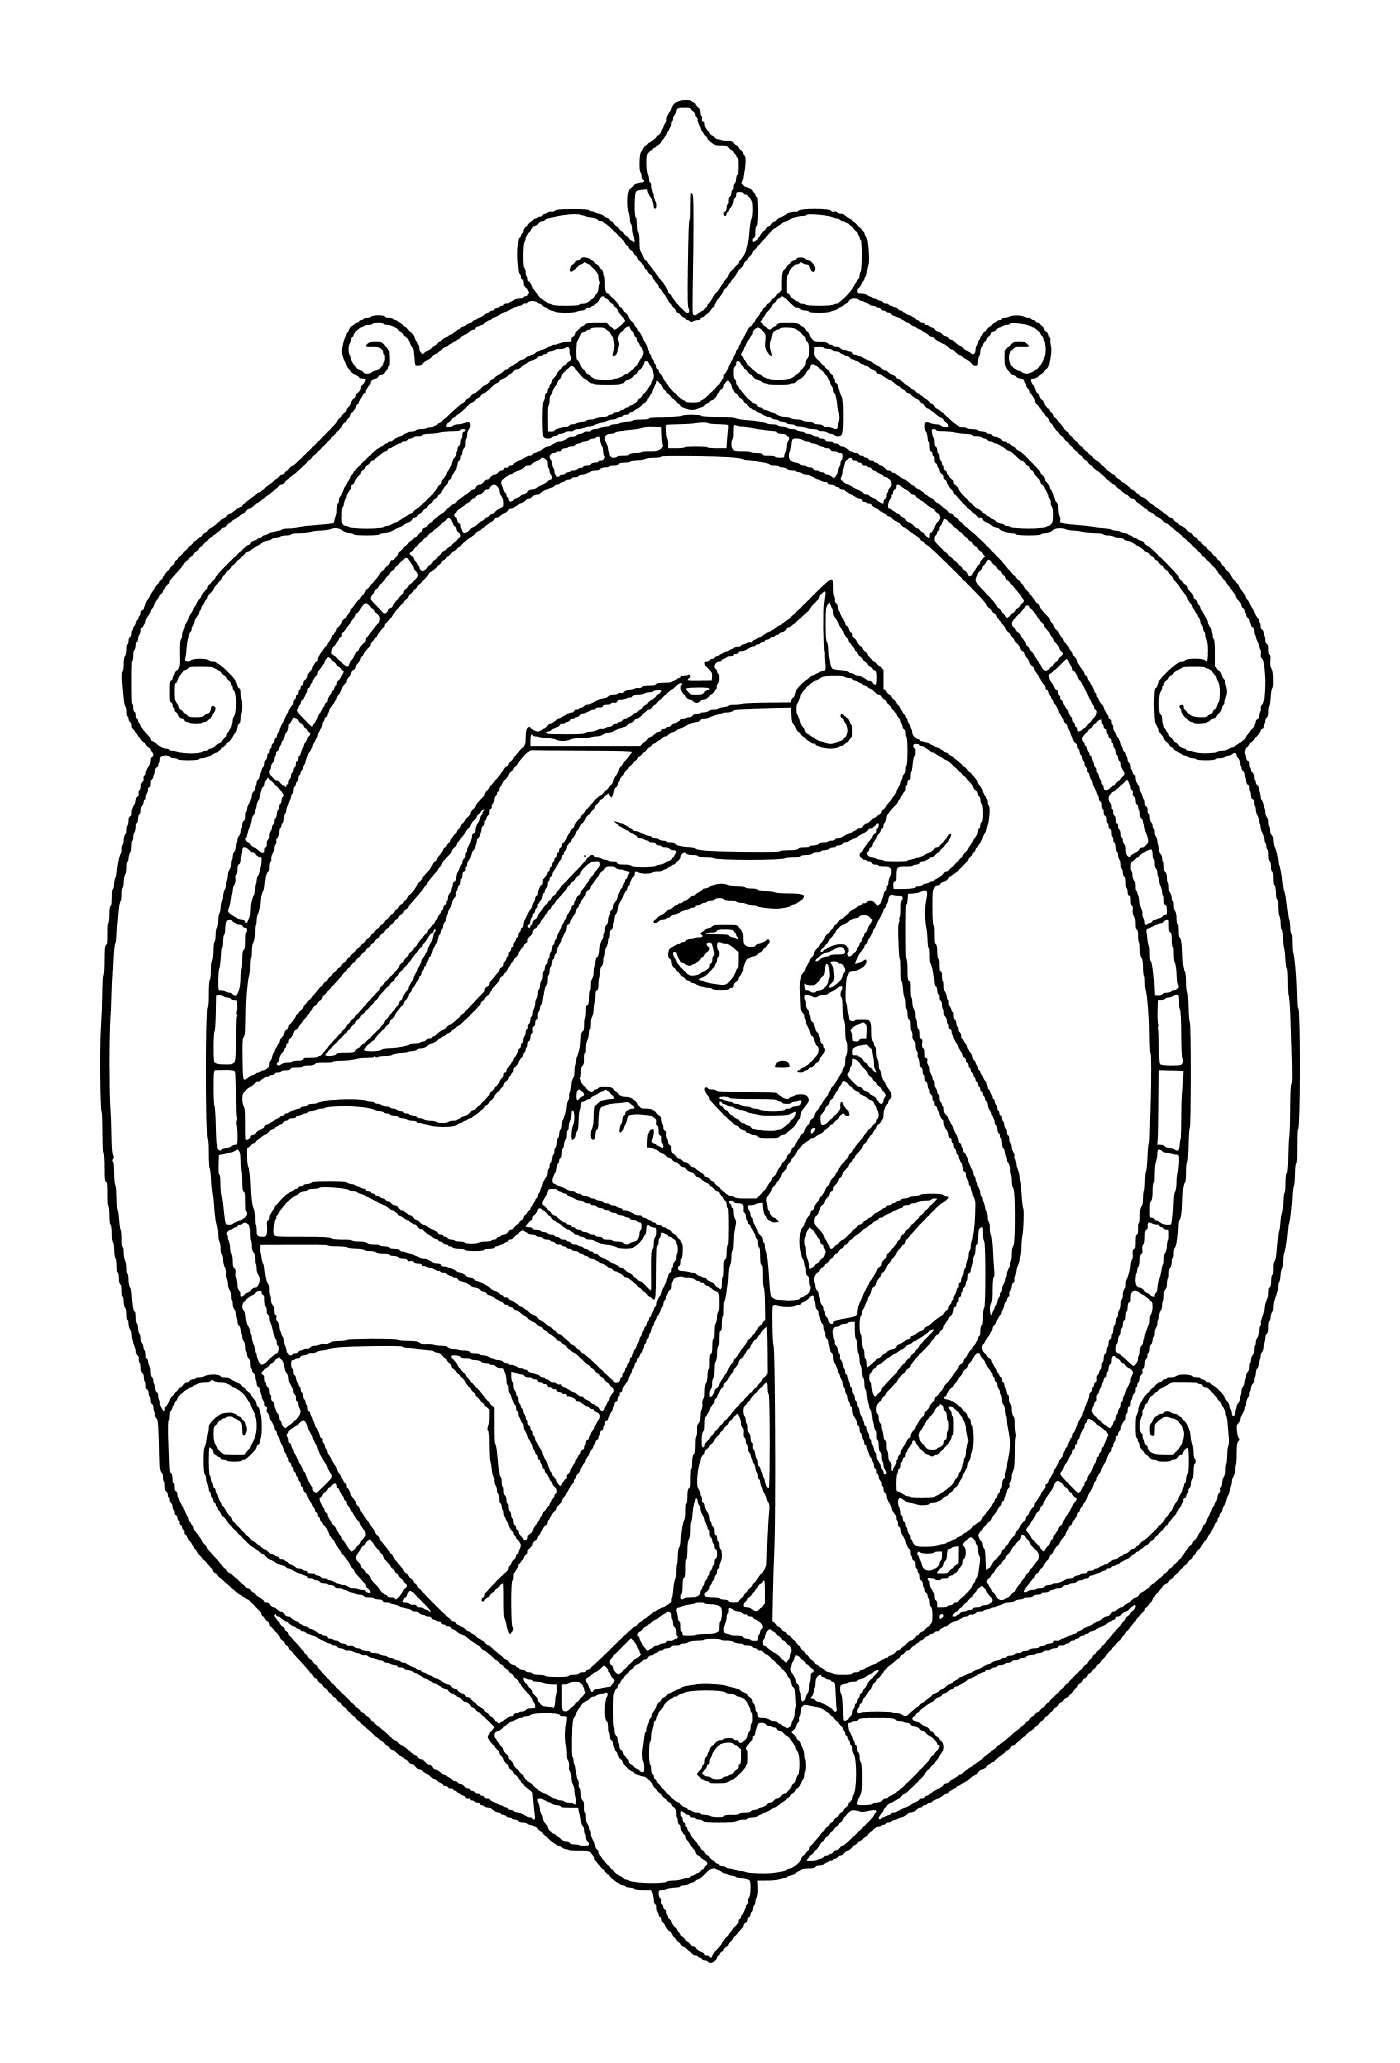  Princesa Aurora de la Bella Durmiente 